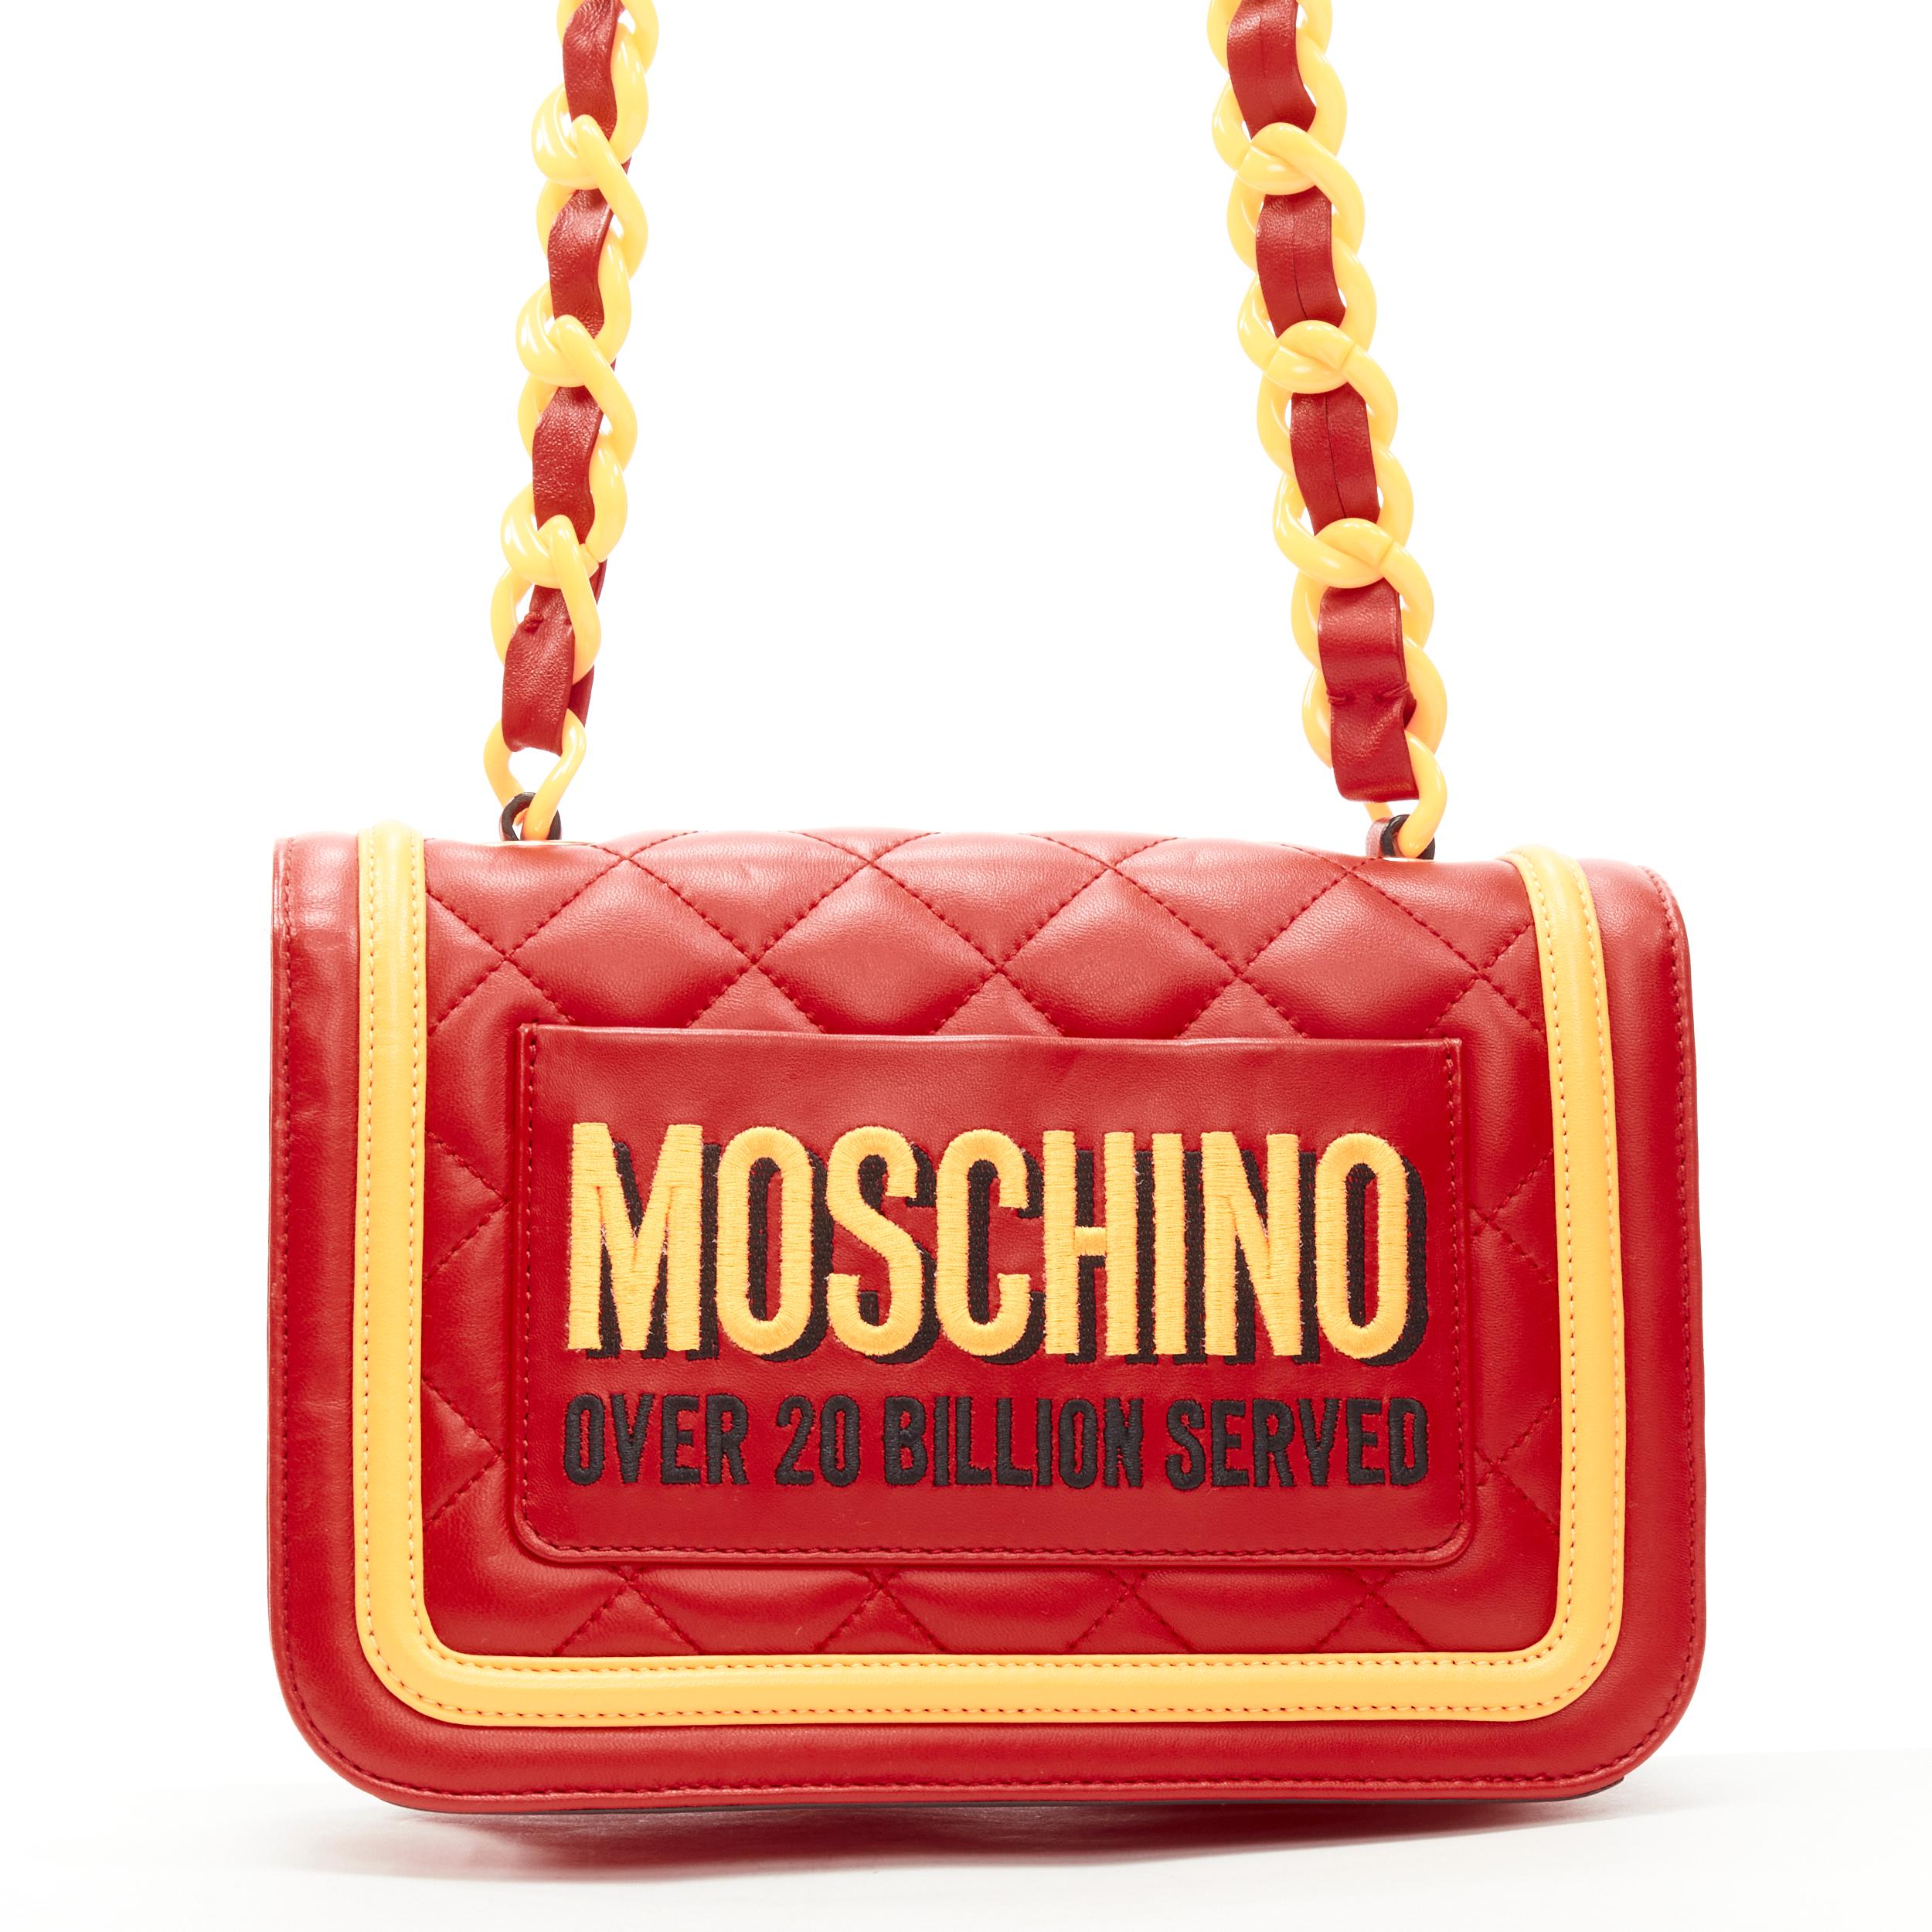 mcdonald's bag purse